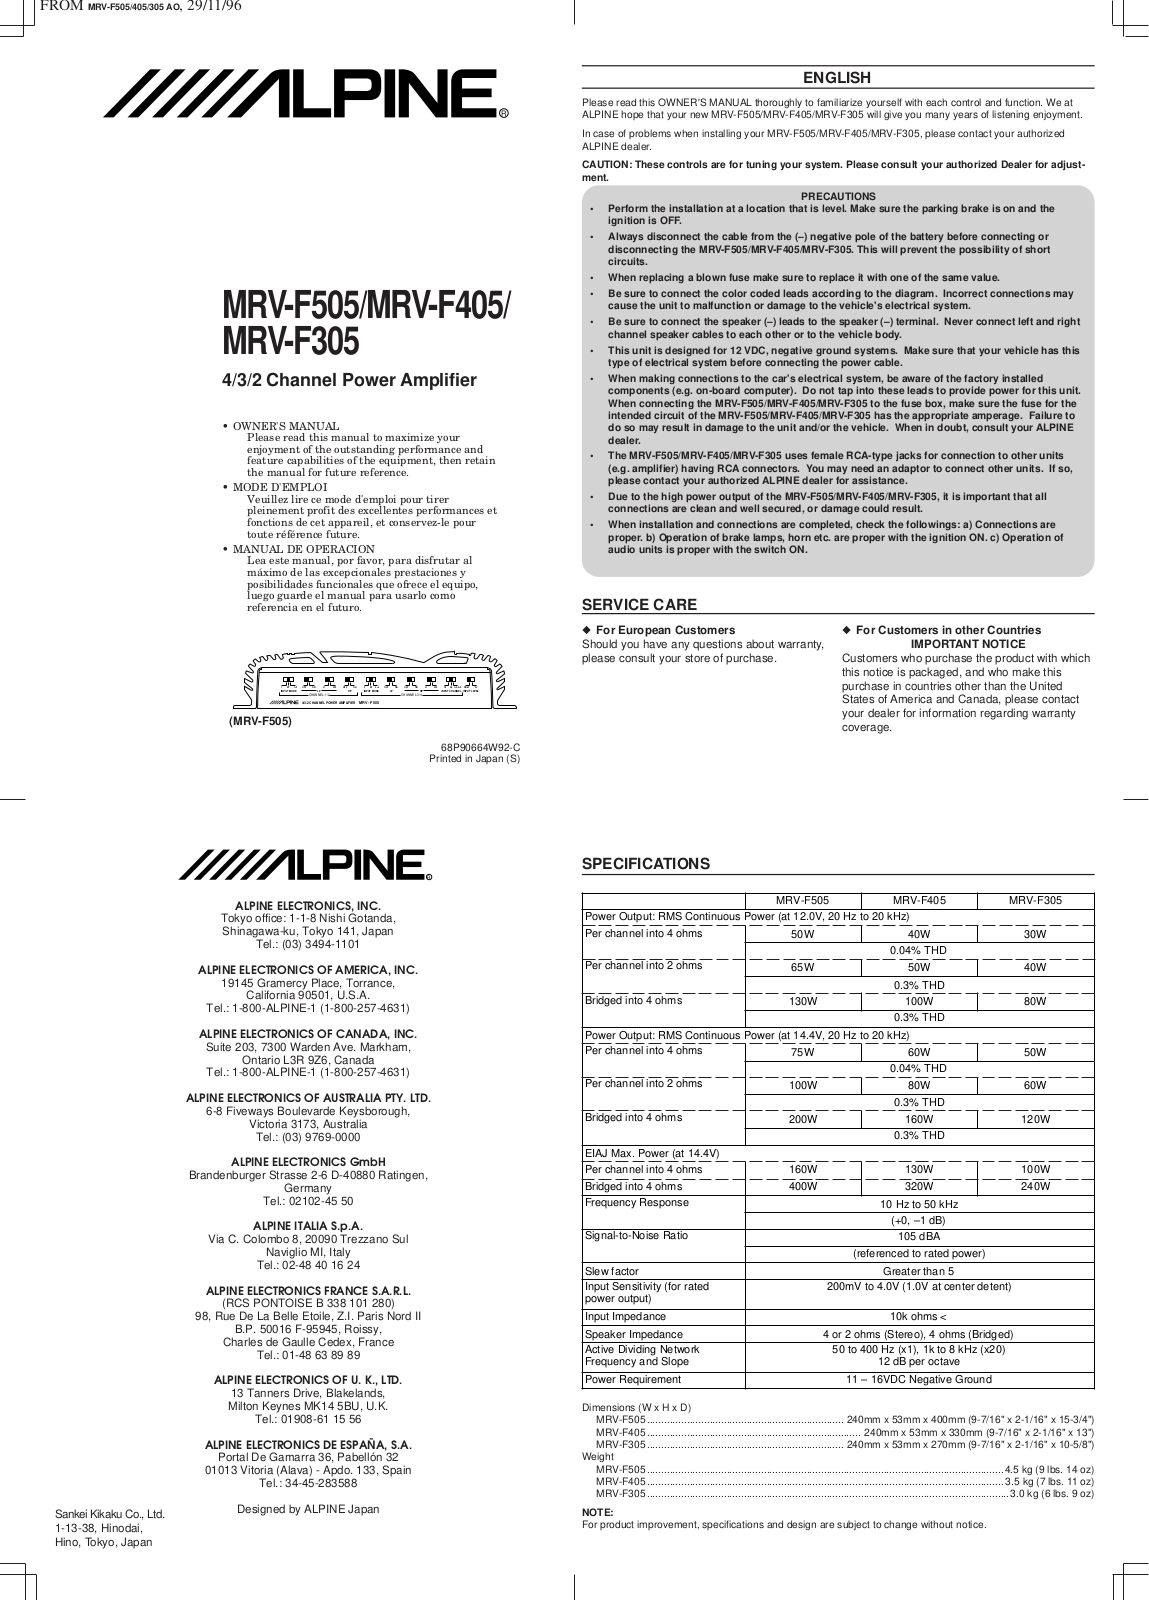 ALPINE MRV-F305 User Manual